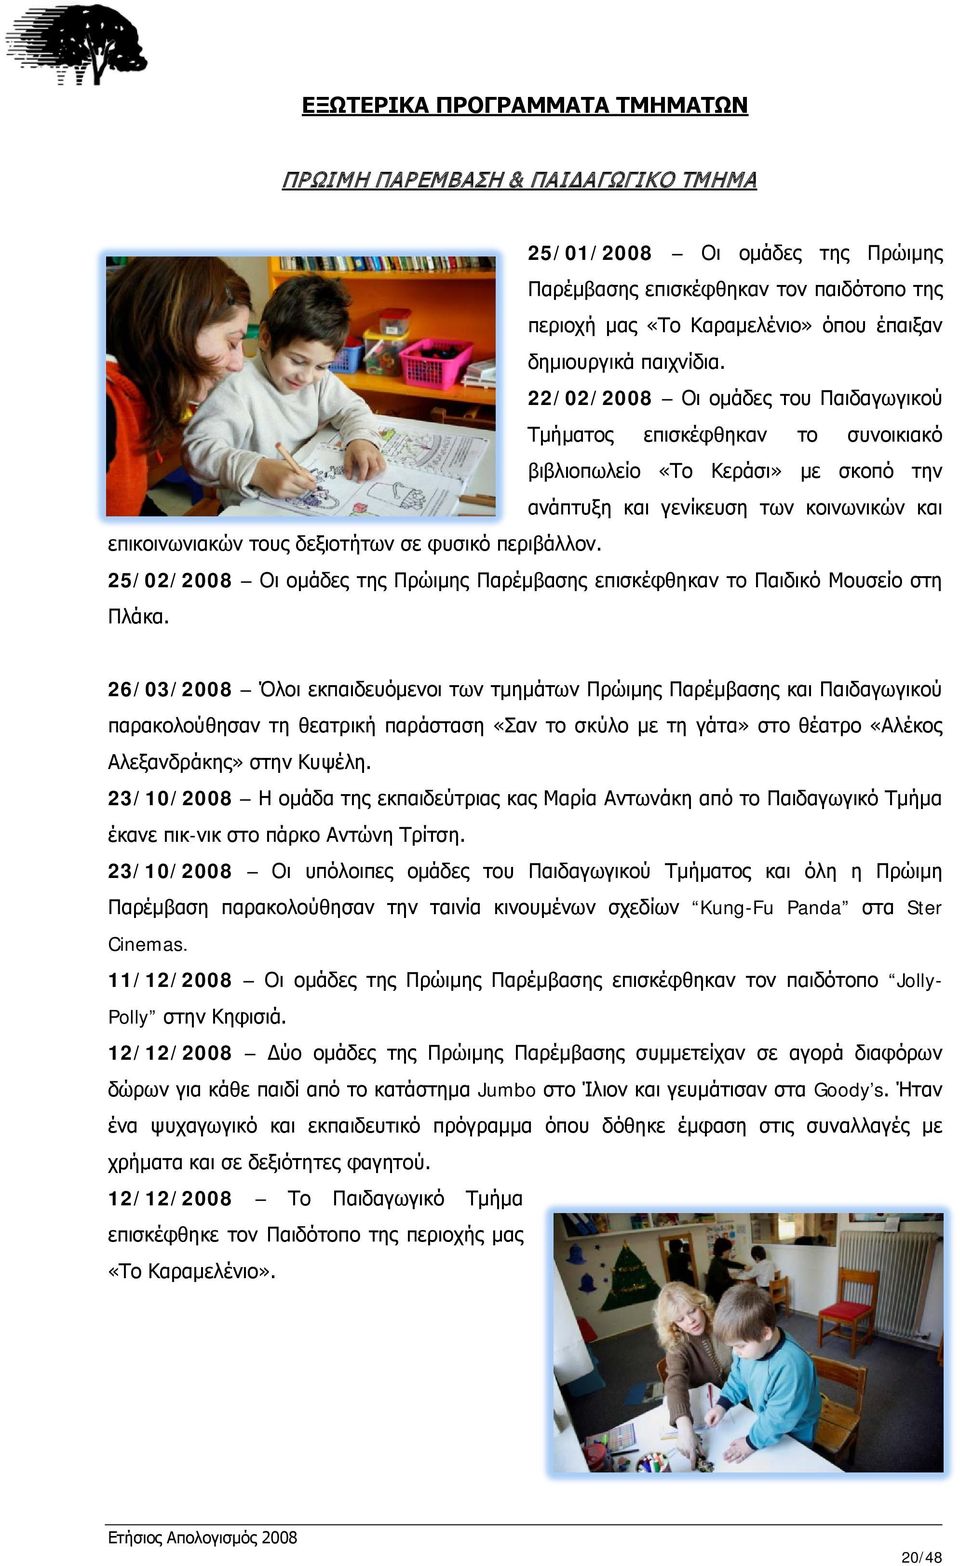 22/02/2008 Οι ομάδες του Παιδαγωγικού Τμήματος επισκέφθηκαν το συνοικιακό βιβλιοπωλείο «Το Κεράσι» με σκοπό την ανάπτυξη και γενίκευση των κοινωνικών και επικοινωνιακών τους δεξιοτήτων σε φυσικό